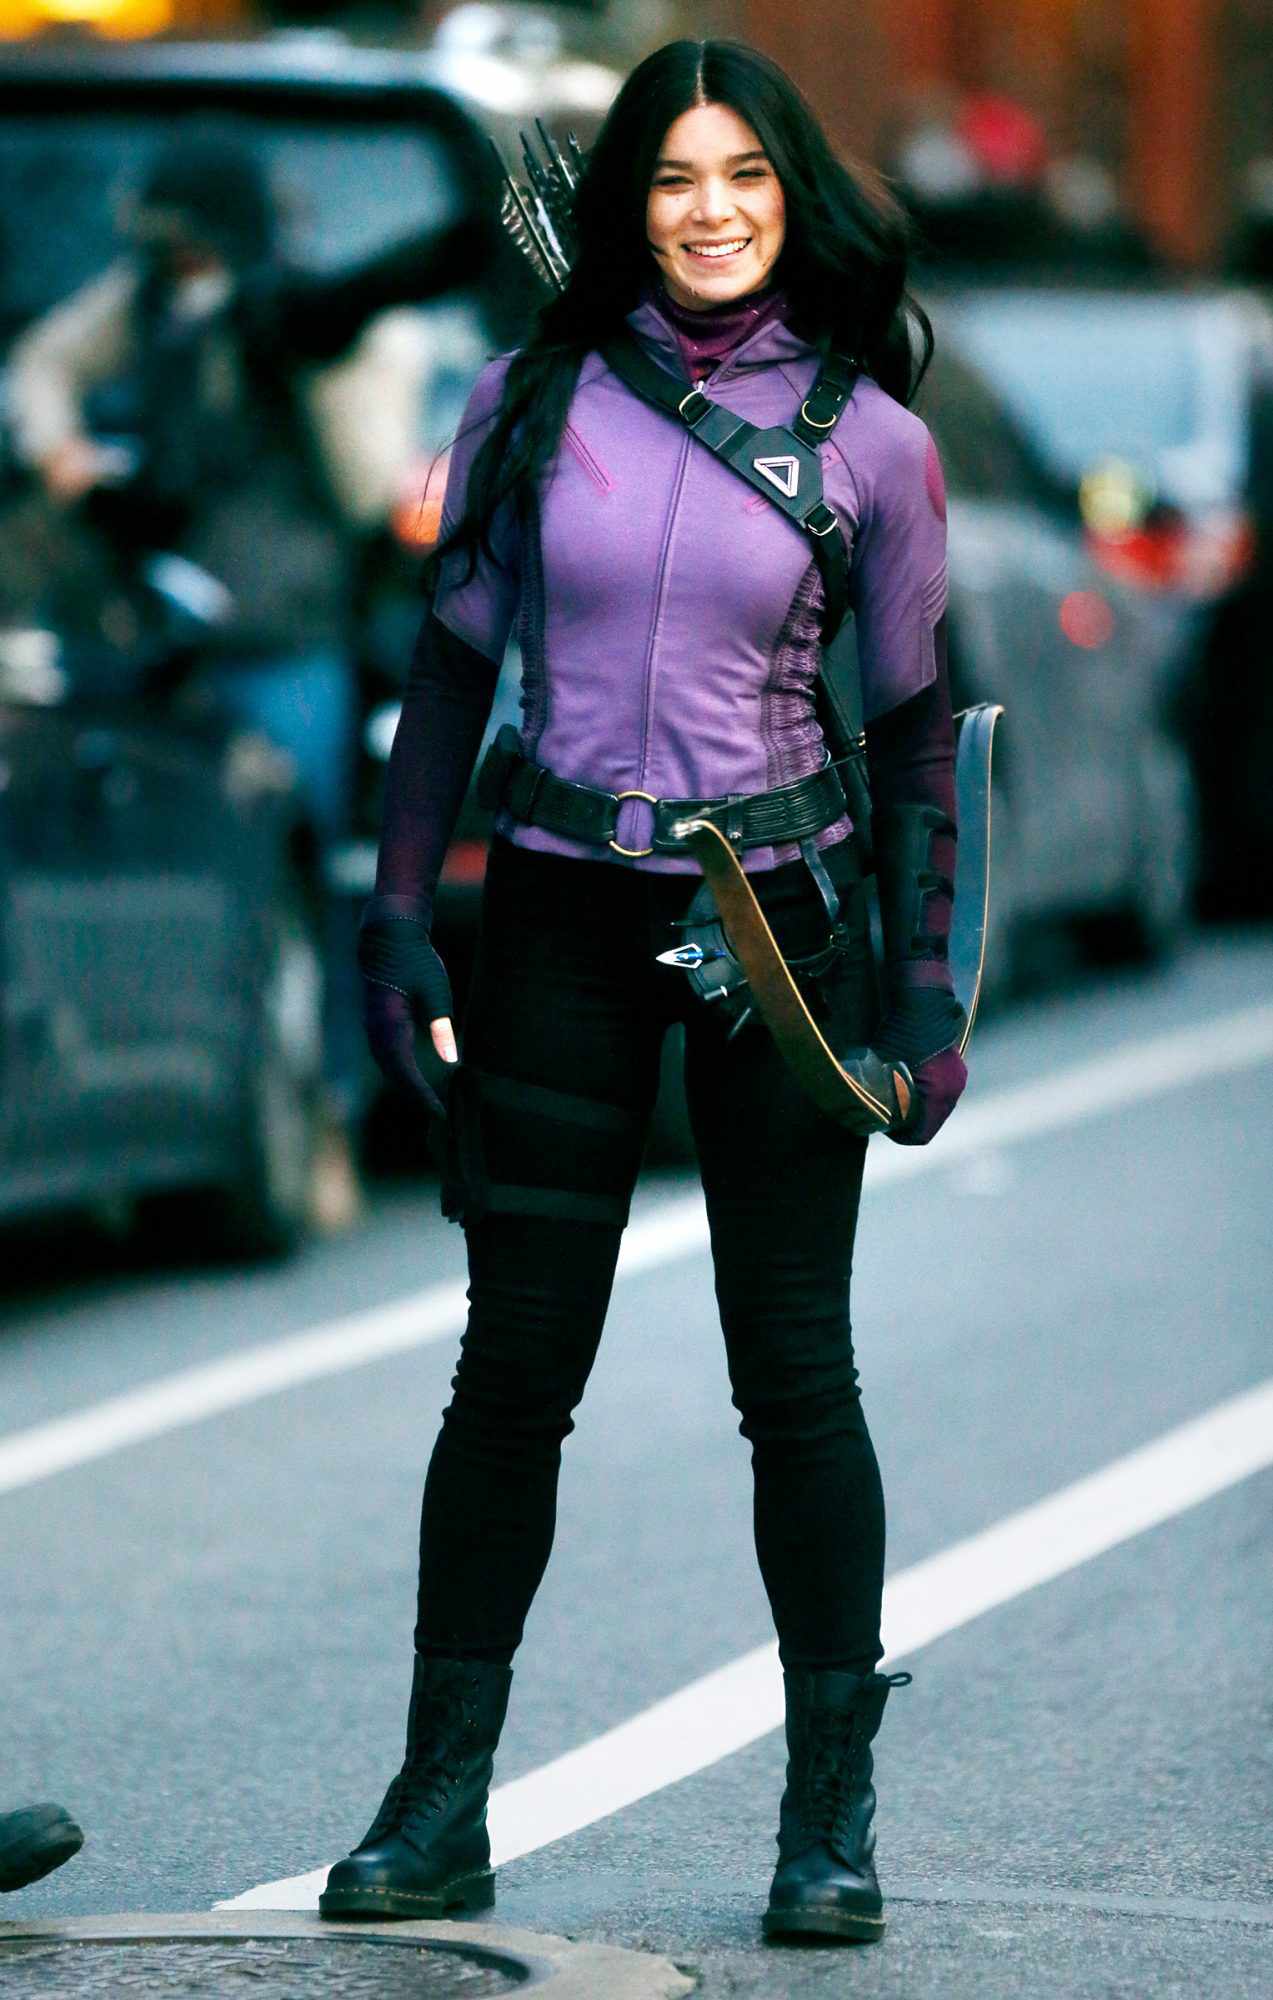 Hailee Steinfeld as Kate Bishop in the Disney+ series 'Hawkeye'